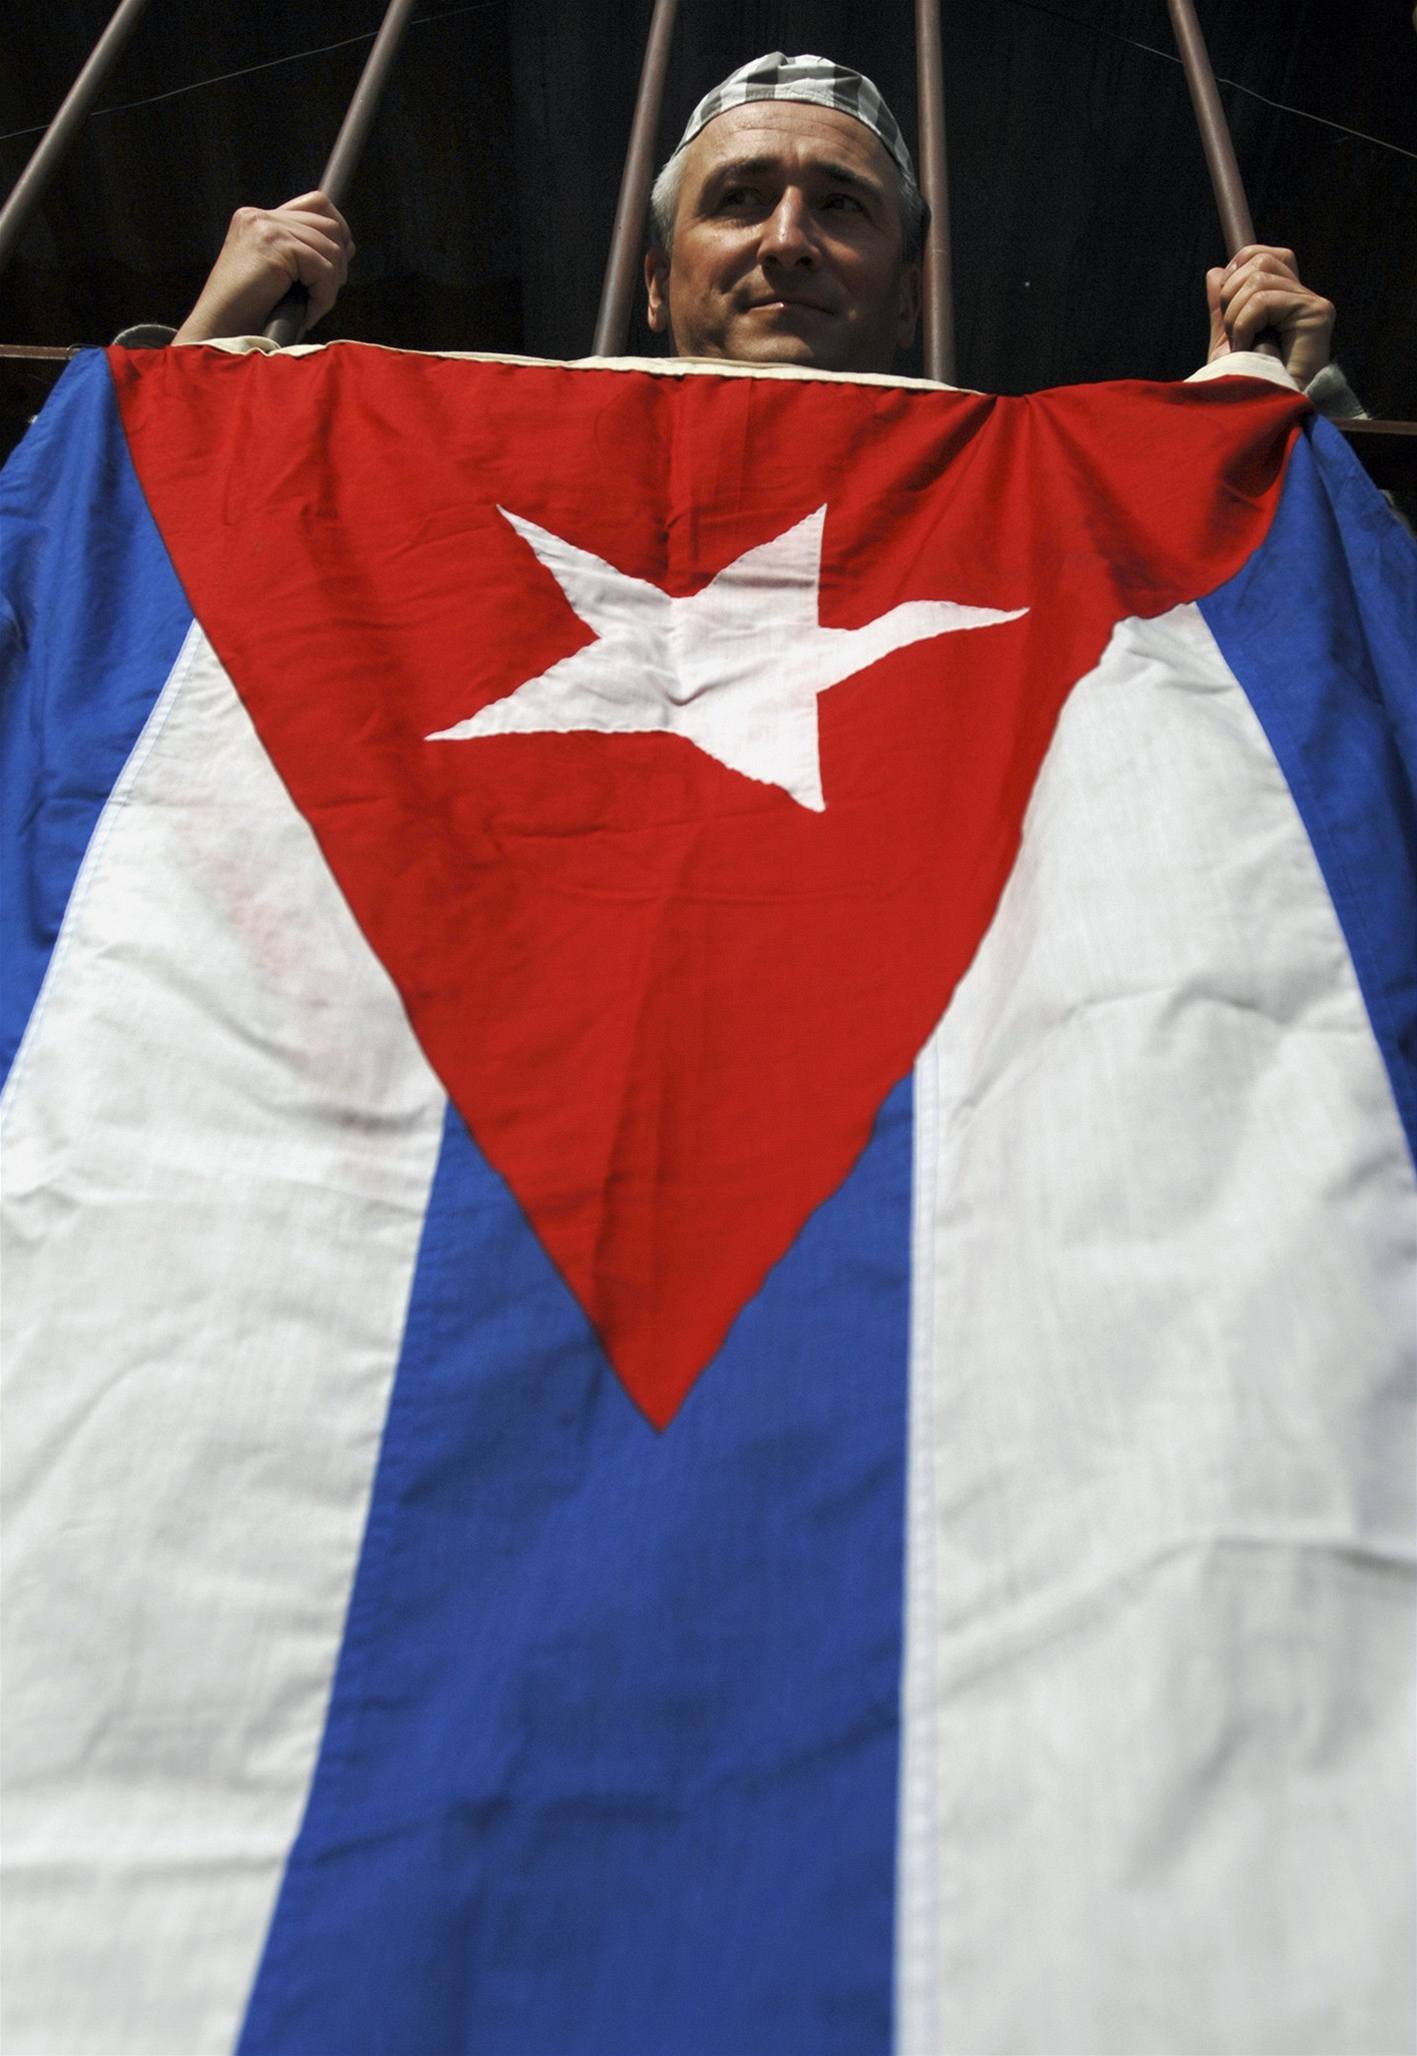 Za svobodnou Kubu!